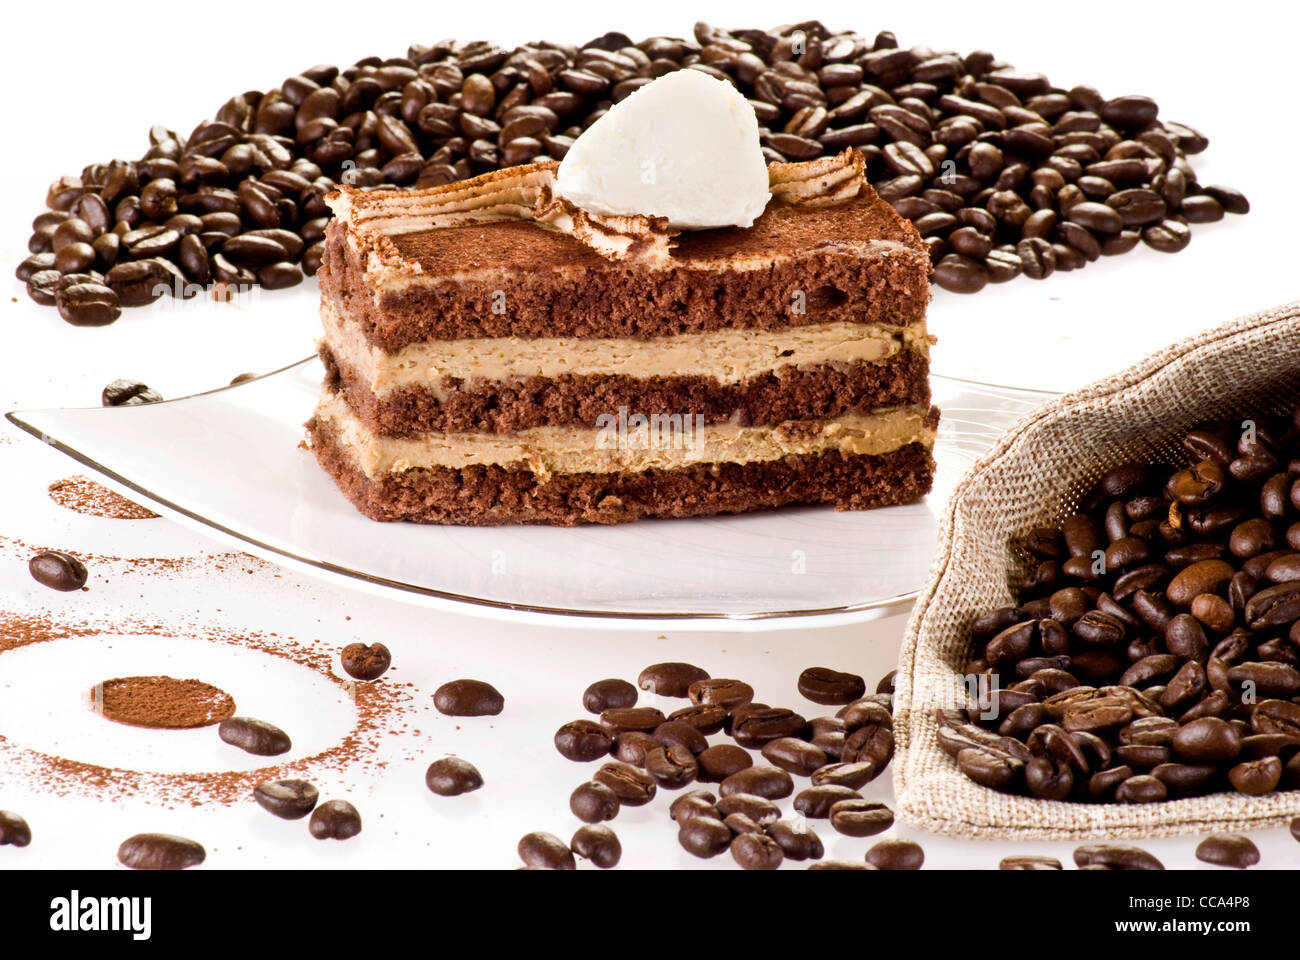 Tiramisu gâteau sur la plaque avec les grains de café autour de Banque D'Images